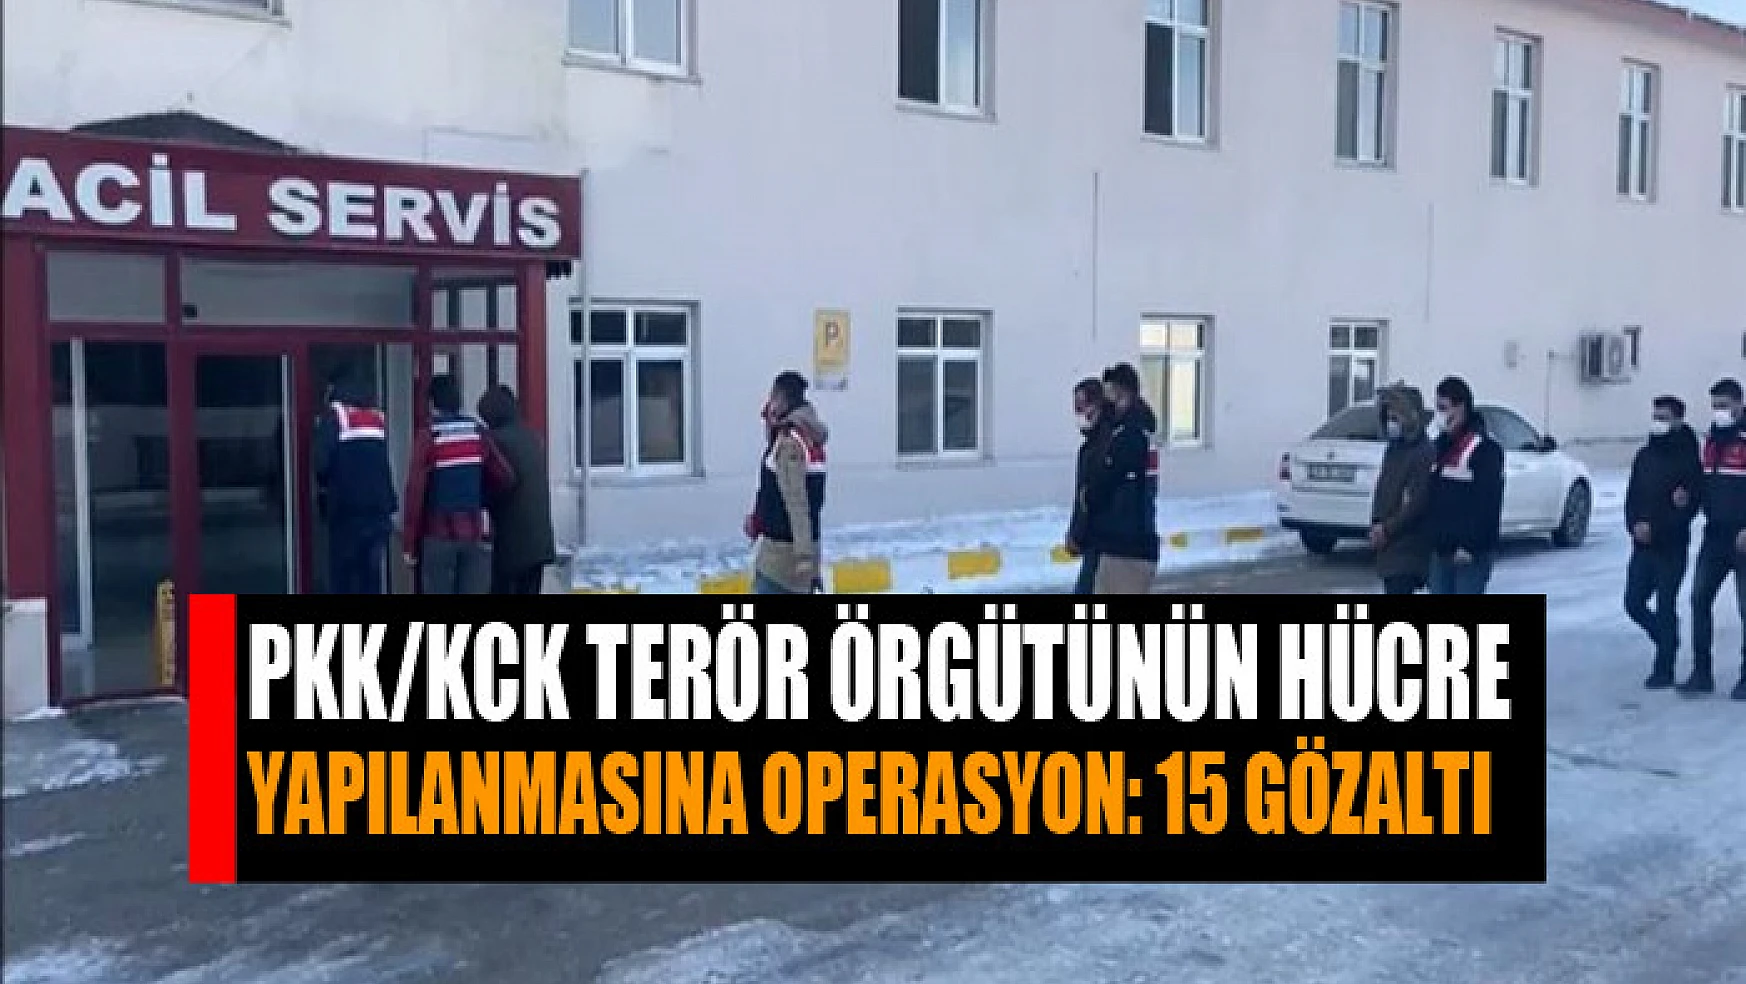 PKK/KCK terör örgütünün hücre yapılanmasına operasyon: 15 gözaltı